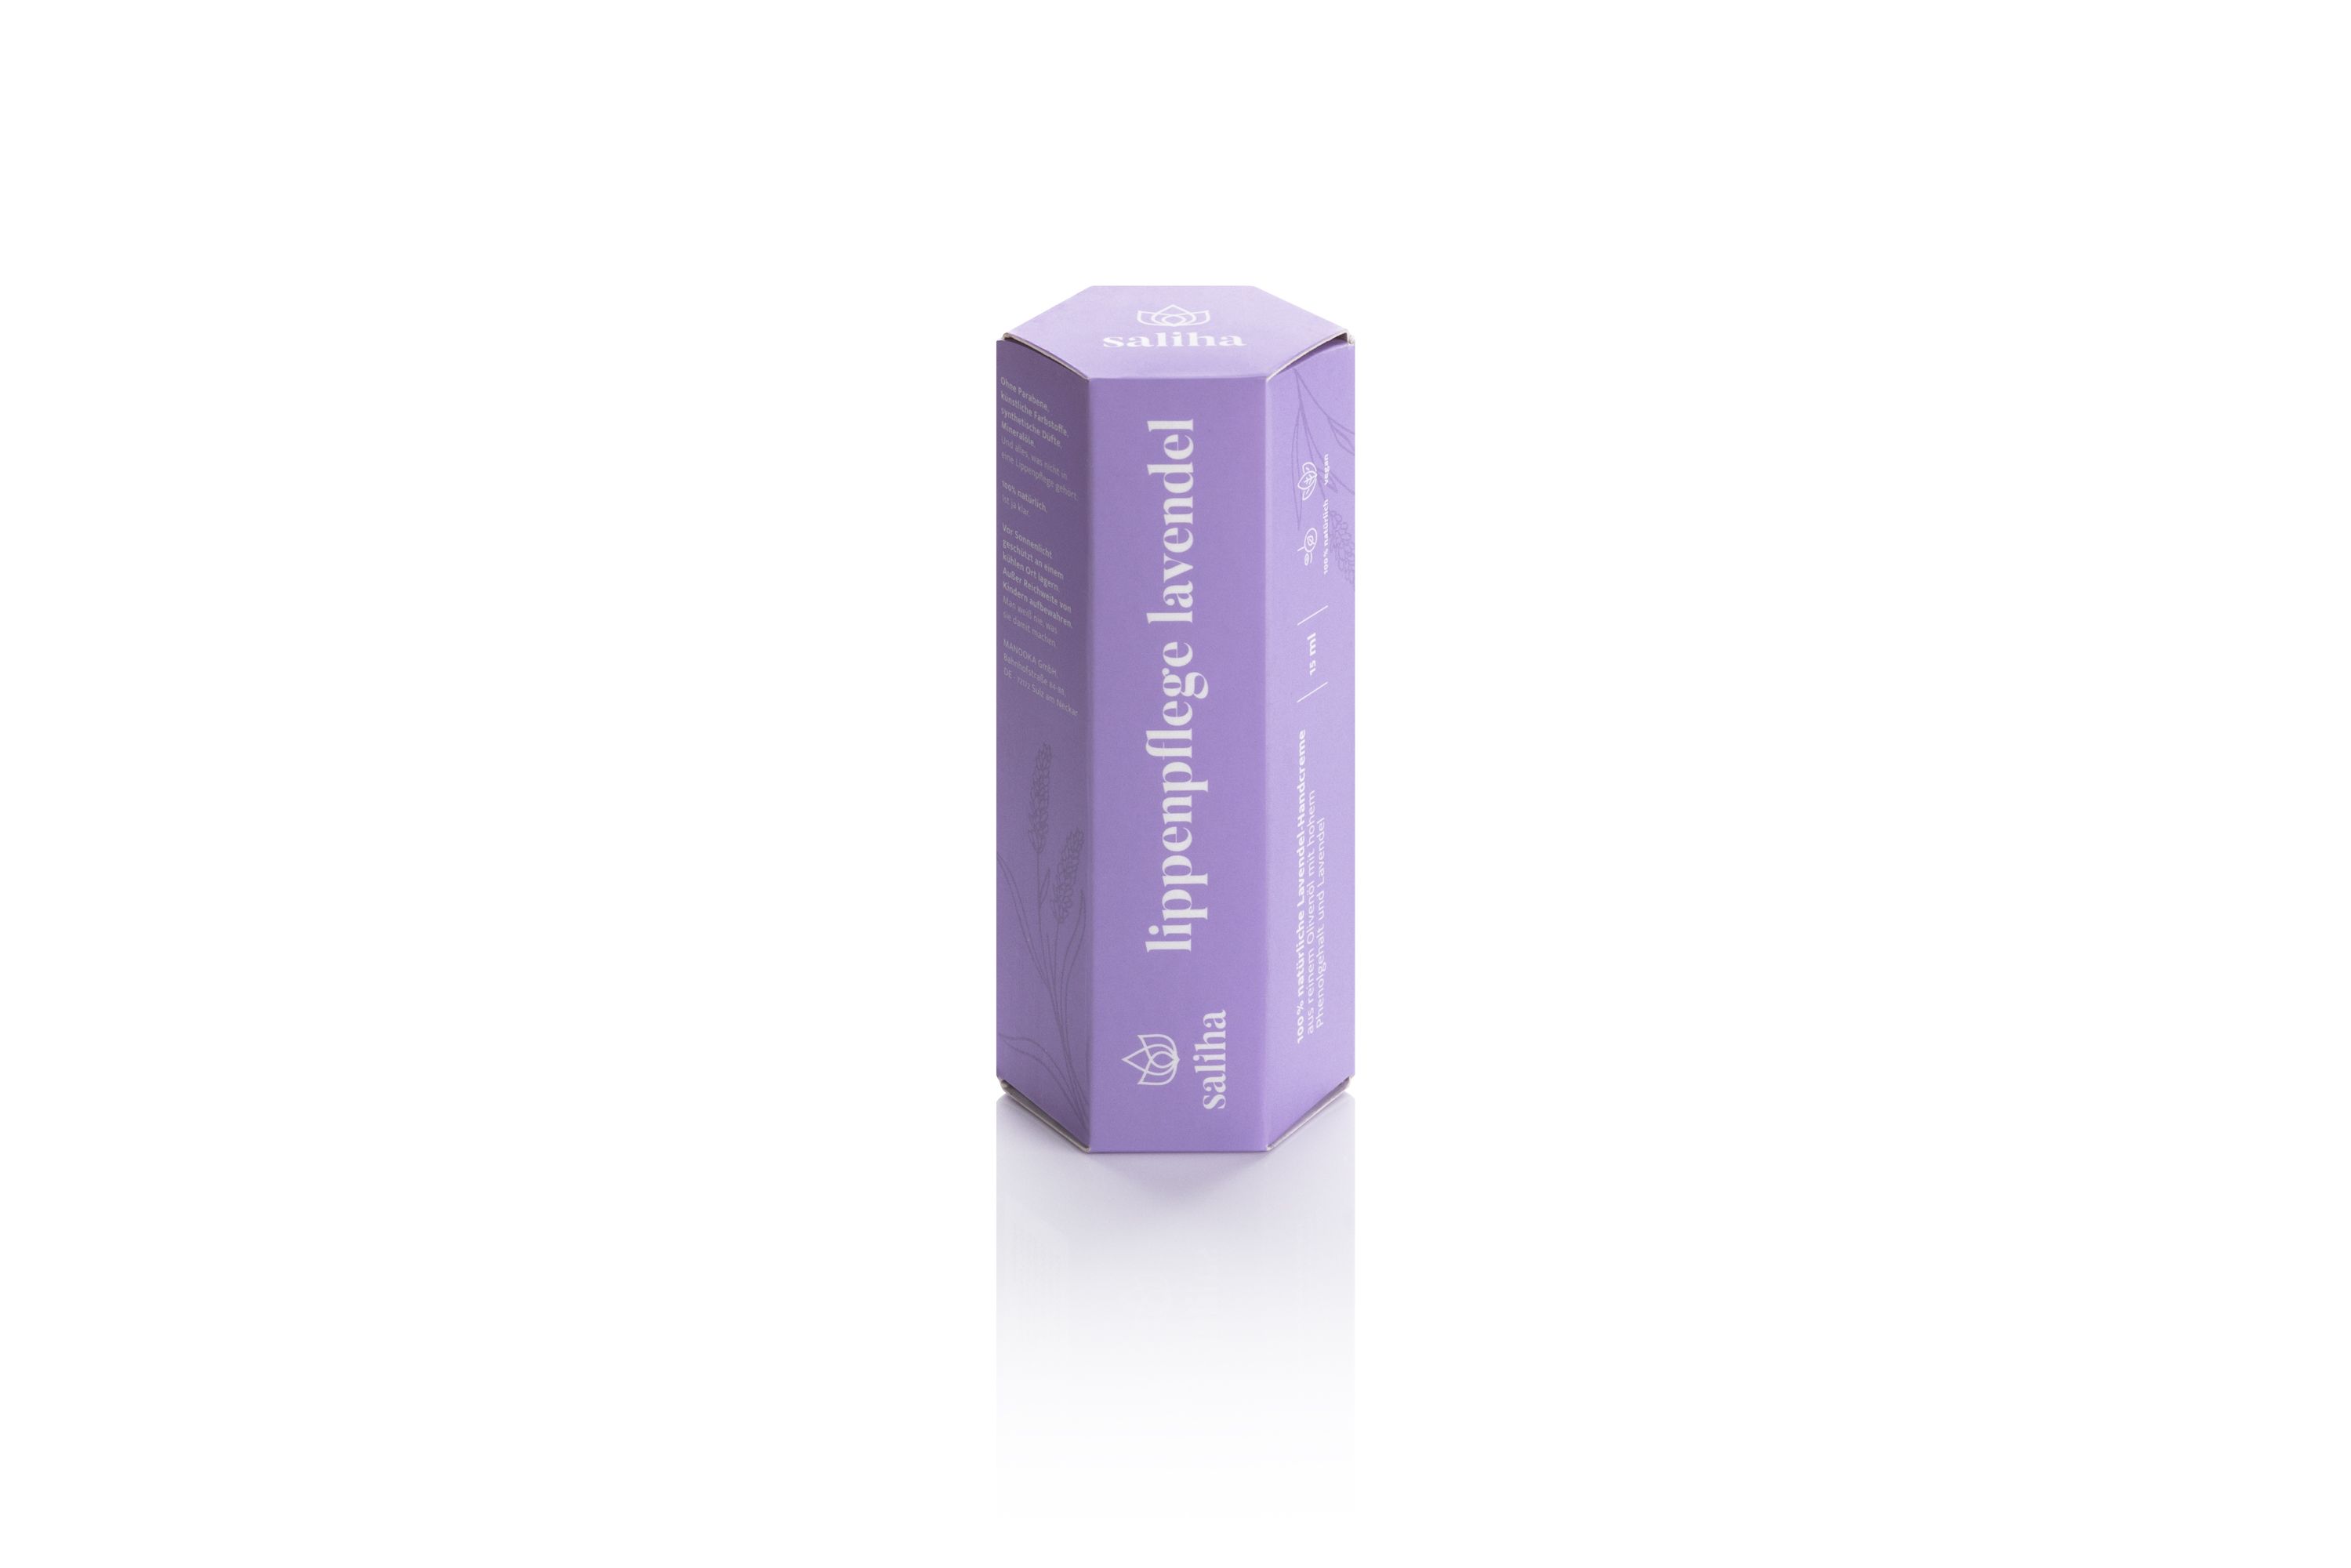 Die Verpackung der Lavendel-Lippenpflege